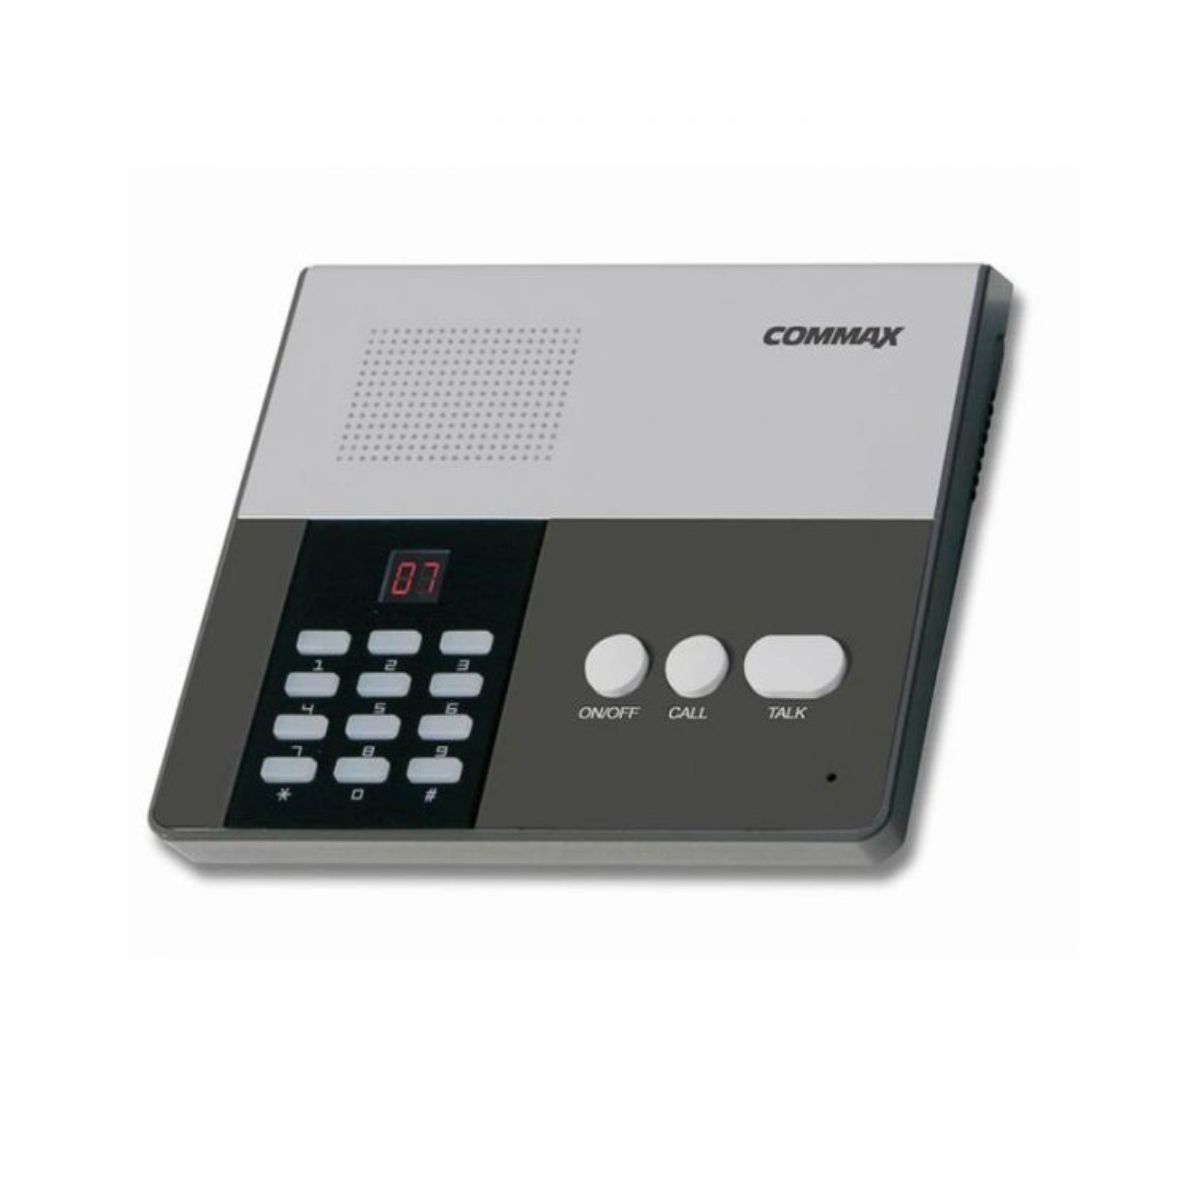 Điện thoại bàn liên lạc nội bộ không tay nghe Commax CM-810M (máy đồng cấp), kết nối mở rộng đến 10 máy, khoảng cách kết nối 200m